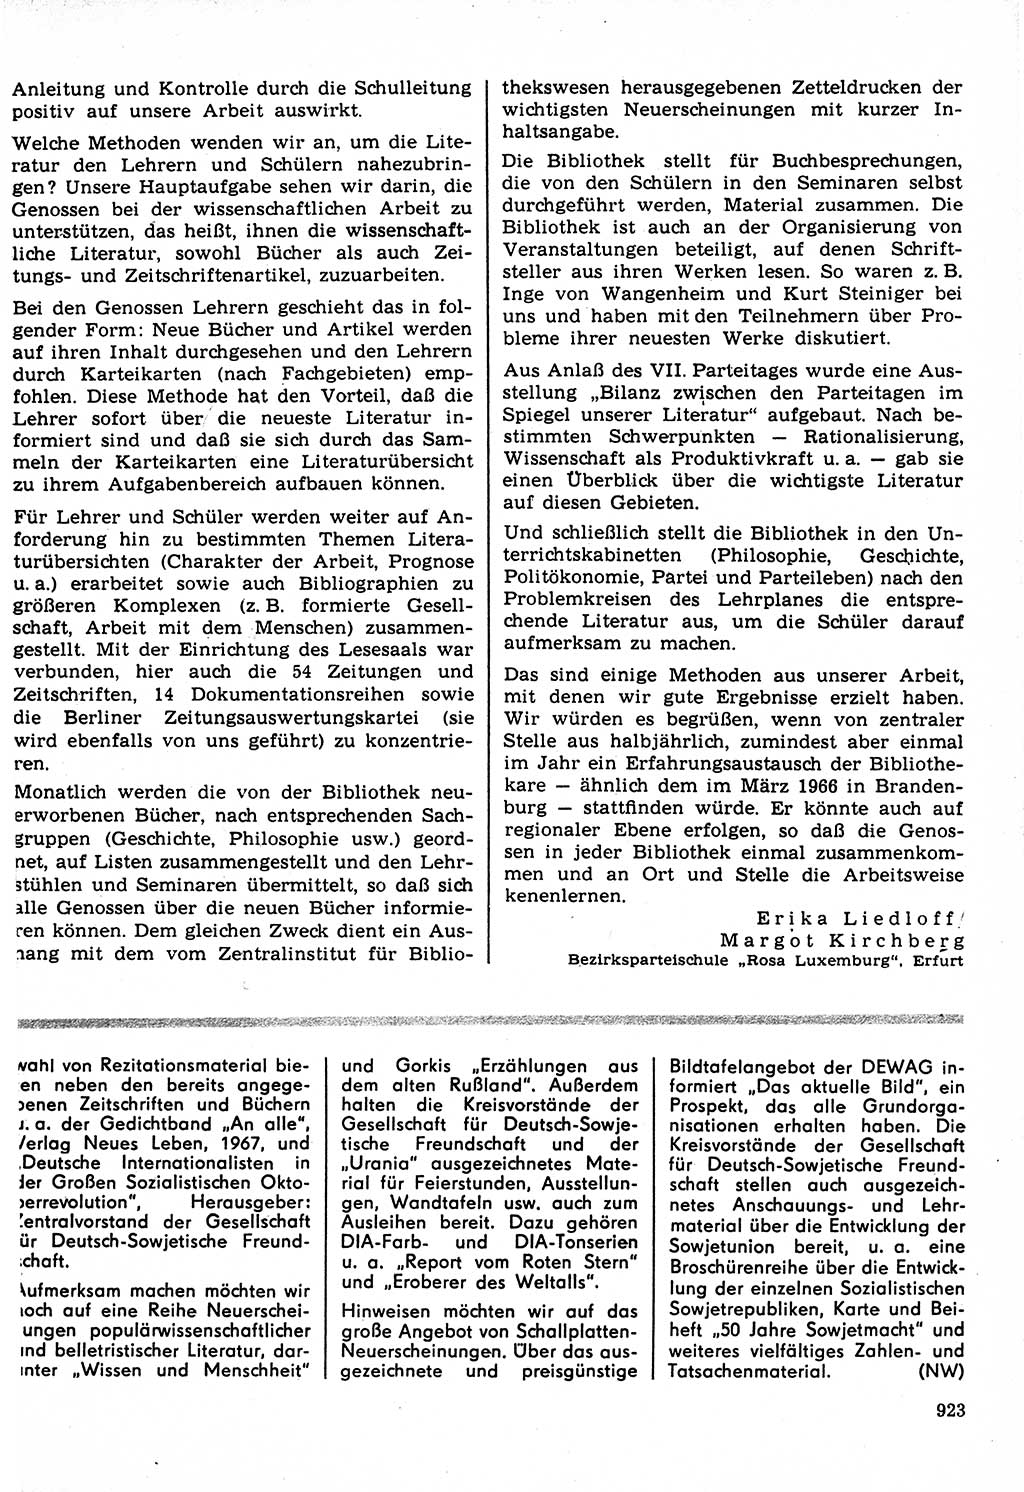 Neuer Weg (NW), Organ des Zentralkomitees (ZK) der SED (Sozialistische Einheitspartei Deutschlands) für Fragen des Parteilebens, 22. Jahrgang [Deutsche Demokratische Republik (DDR)] 1967, Seite 923 (NW ZK SED DDR 1967, S. 923)